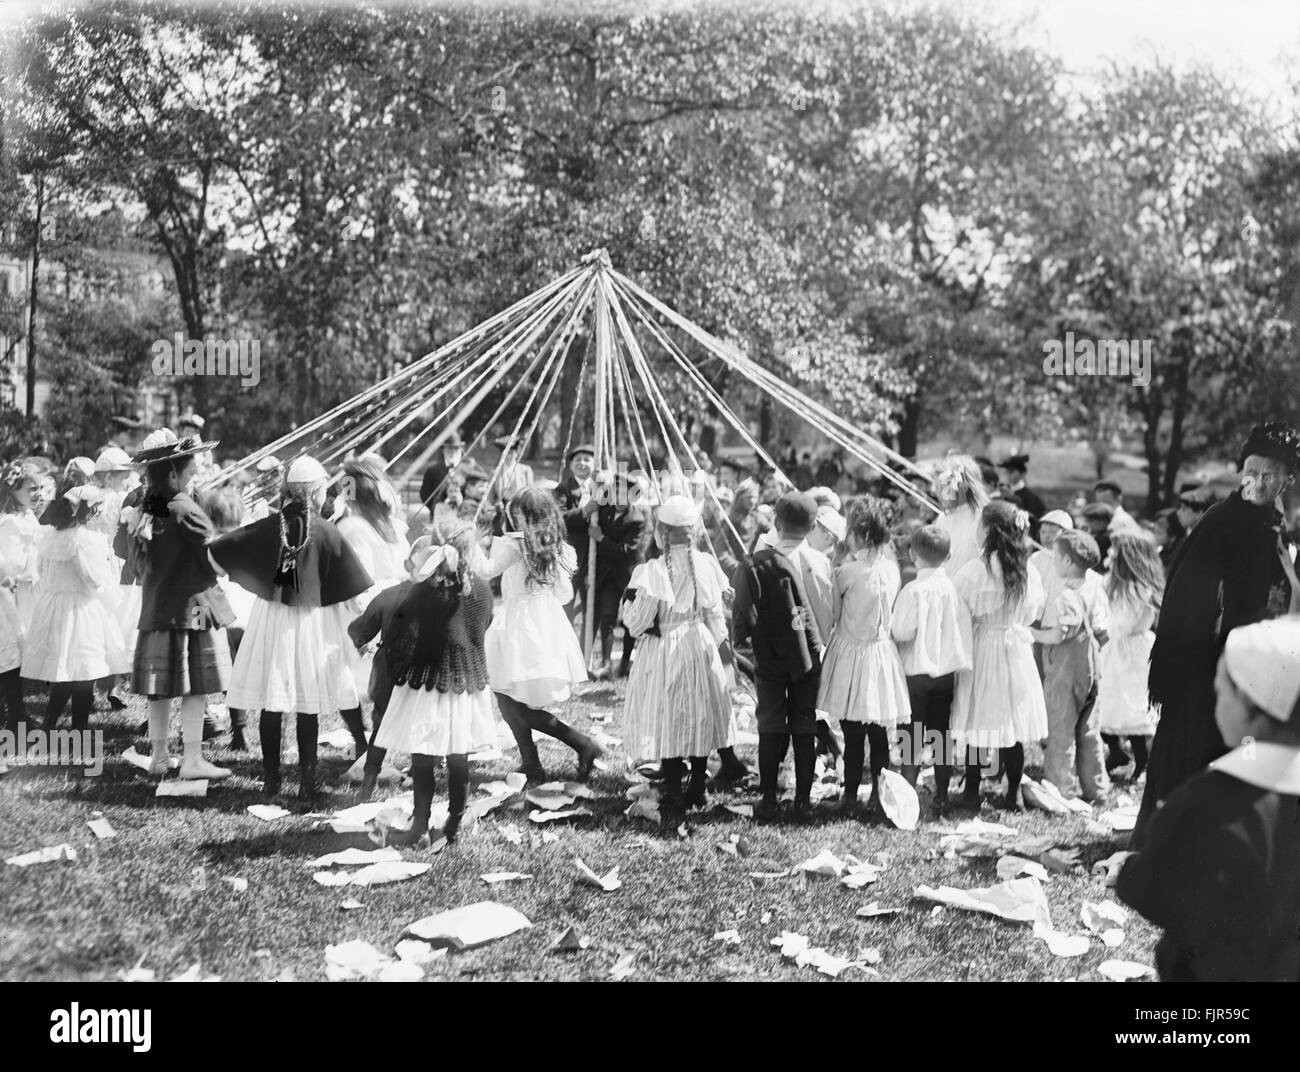 Les enfants, la danse poteau "Maypole" Central Park, New York City, USA, vers 1905 Banque D'Images